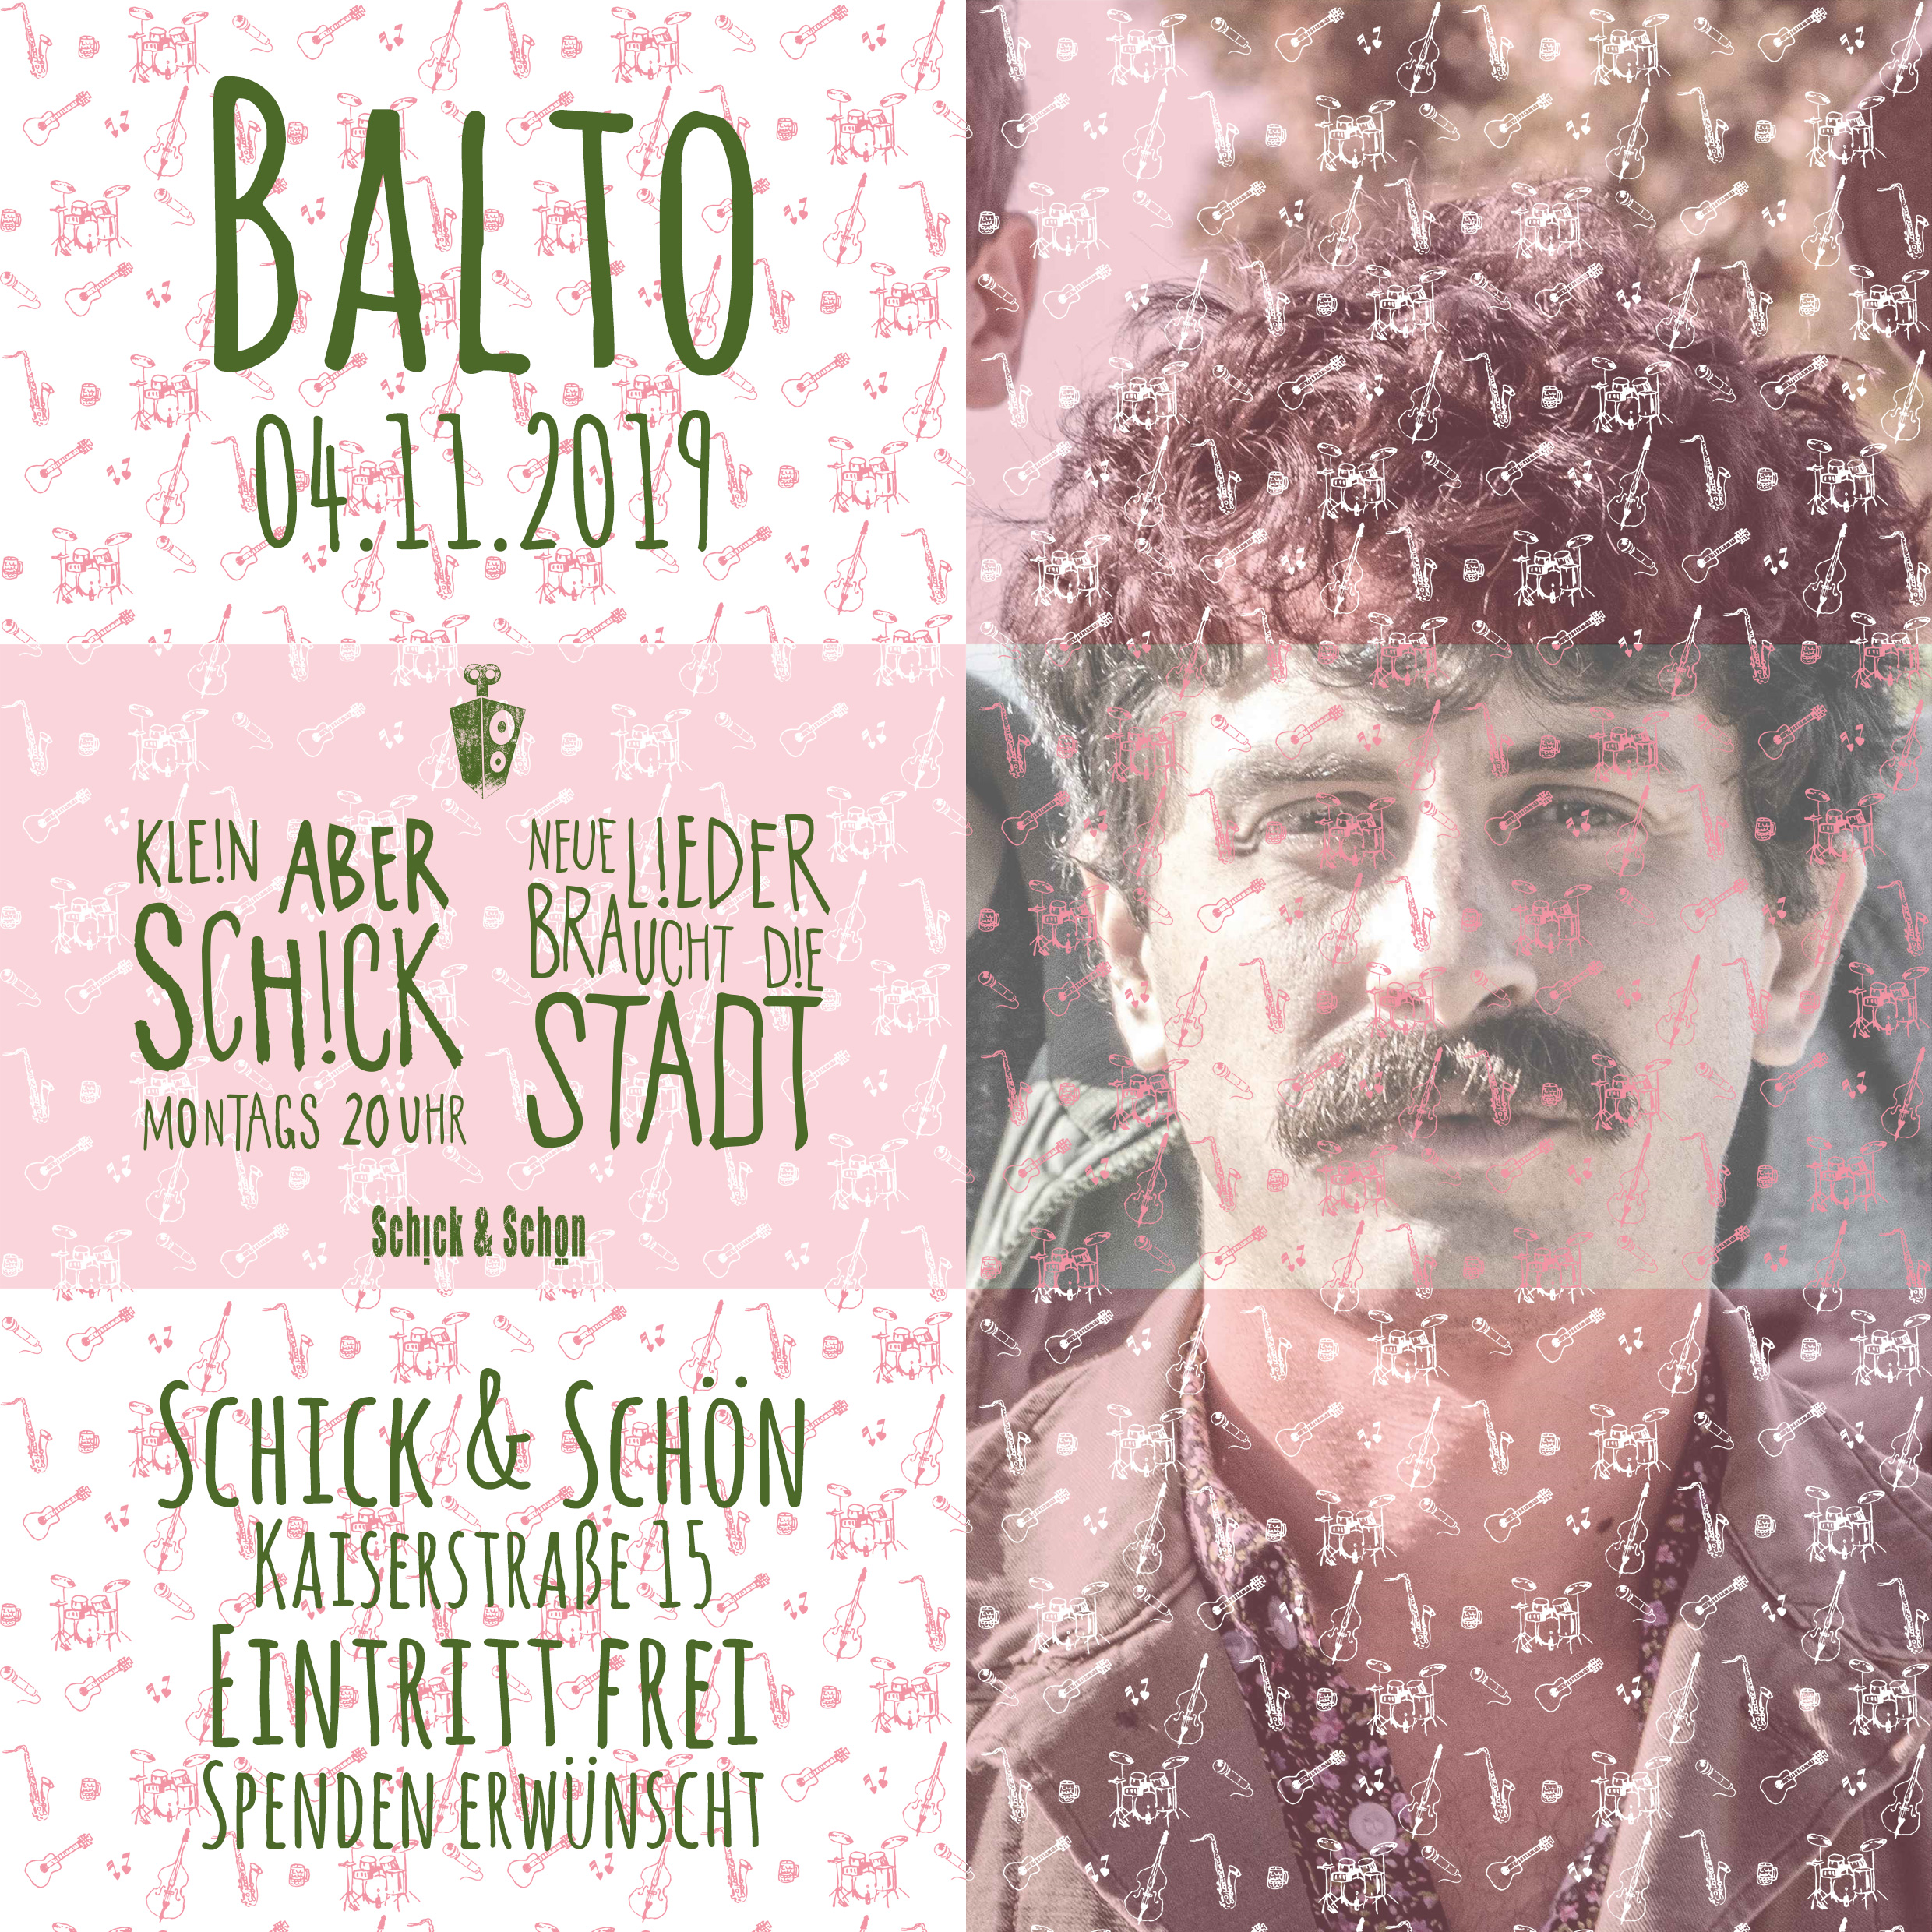 Klein-Aber-Schick-Immer-Montags-schick-und-schön-Mainz-Musikmaschine-Events-Veranstaltungen-Konzerte-Band-Bands-Buchen-Party-Feiern-Donnerstag-special-balto